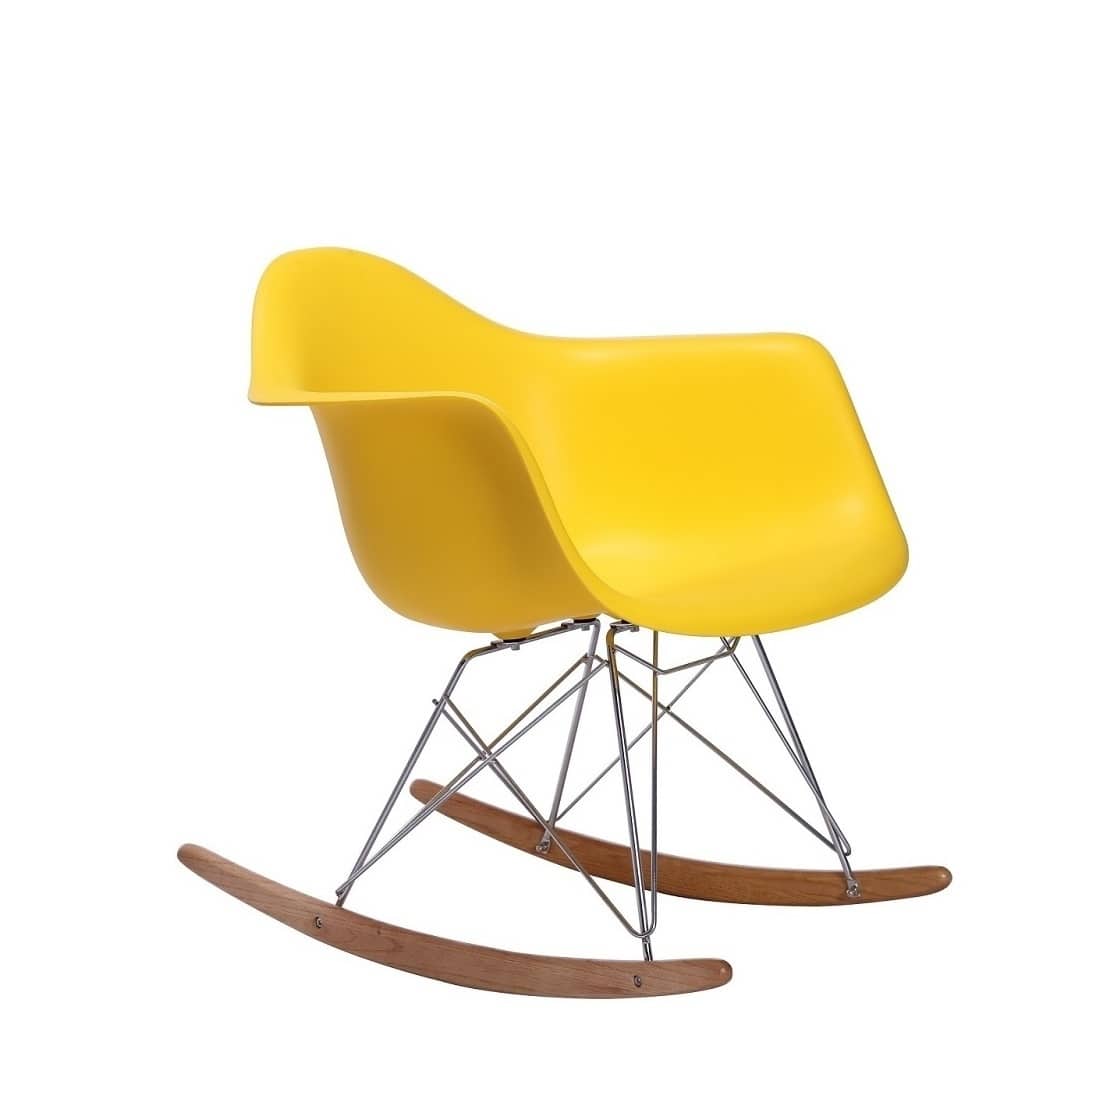 Polypropylene bucket seat with durable metal/wood legs - Yellow